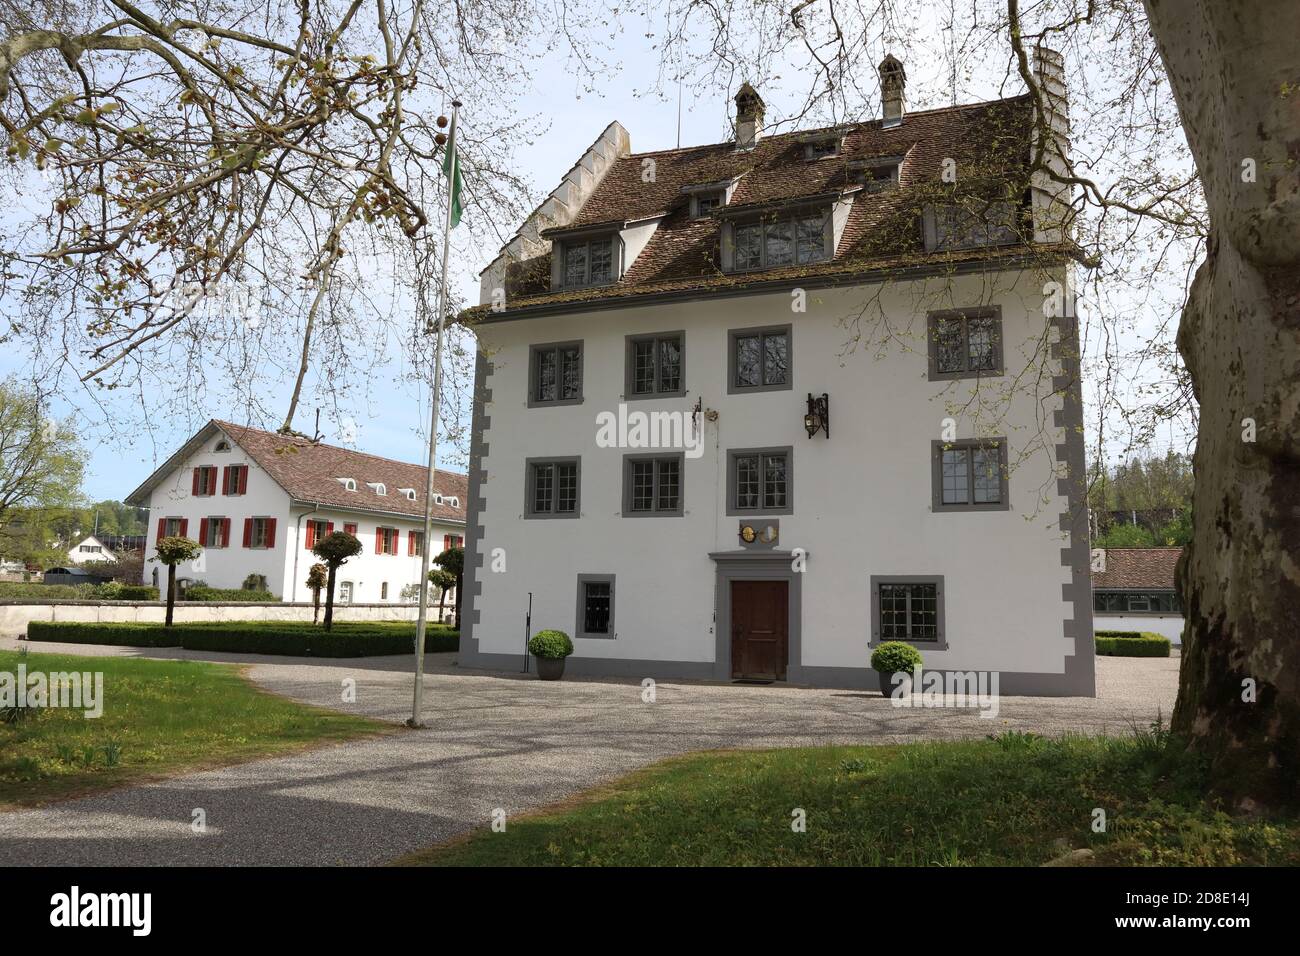 Knonau, Kanton Zuerich (ZH)/ Switzerland - April 19 2020: Castle Schloss Knonau located in canton Zurich, Switzerland Stock Photo